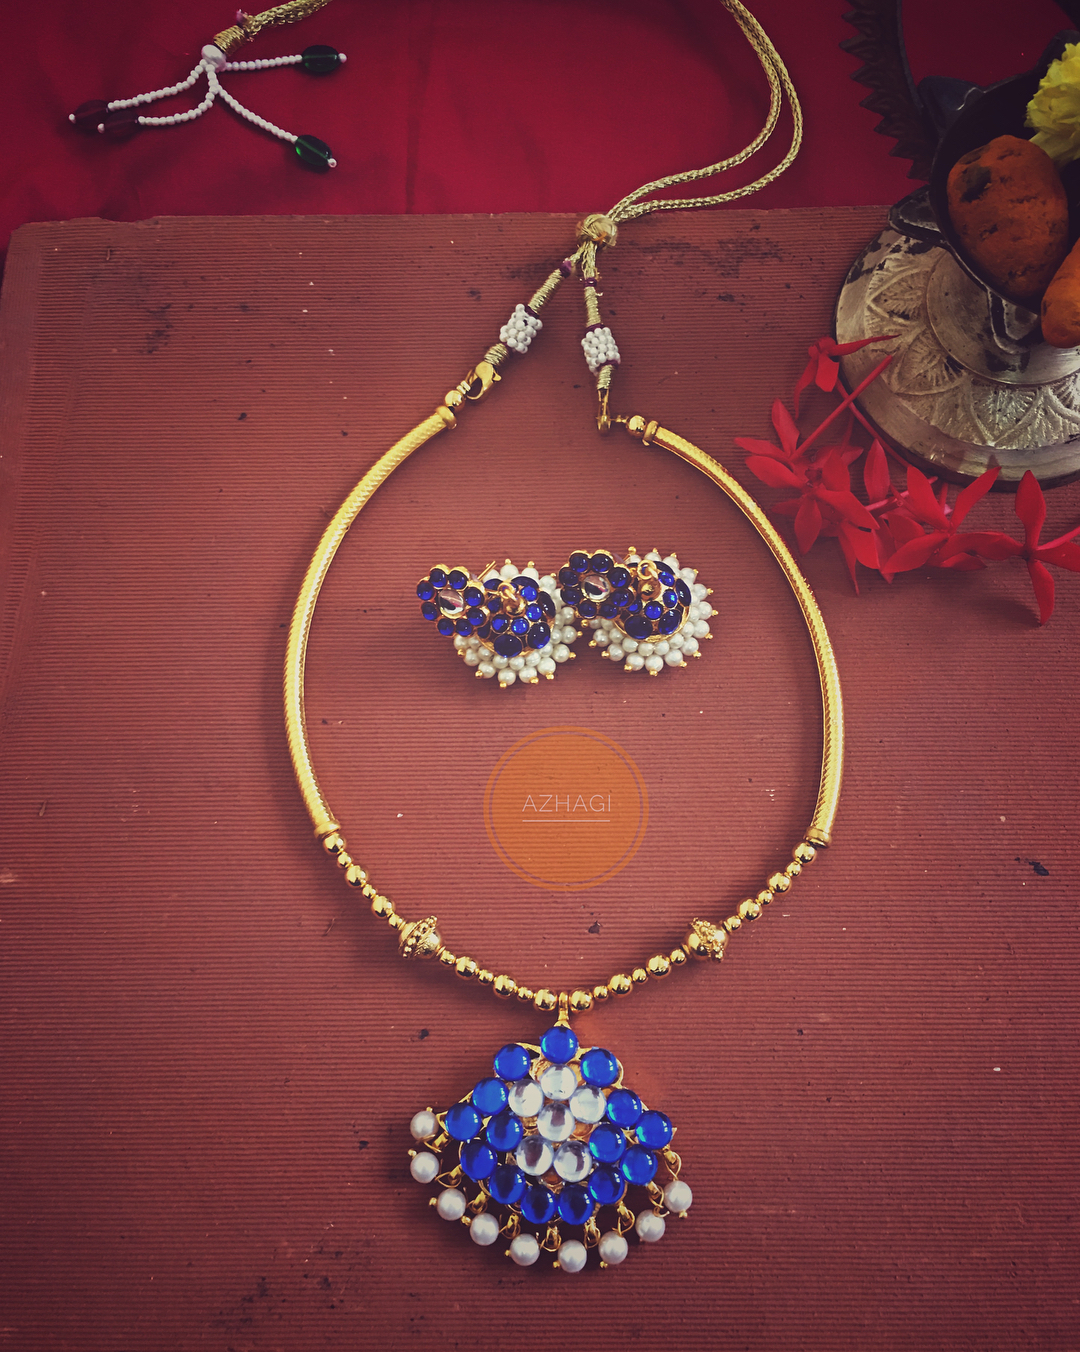 Beautiful Handmade Necklace Set From Azhagi Beads